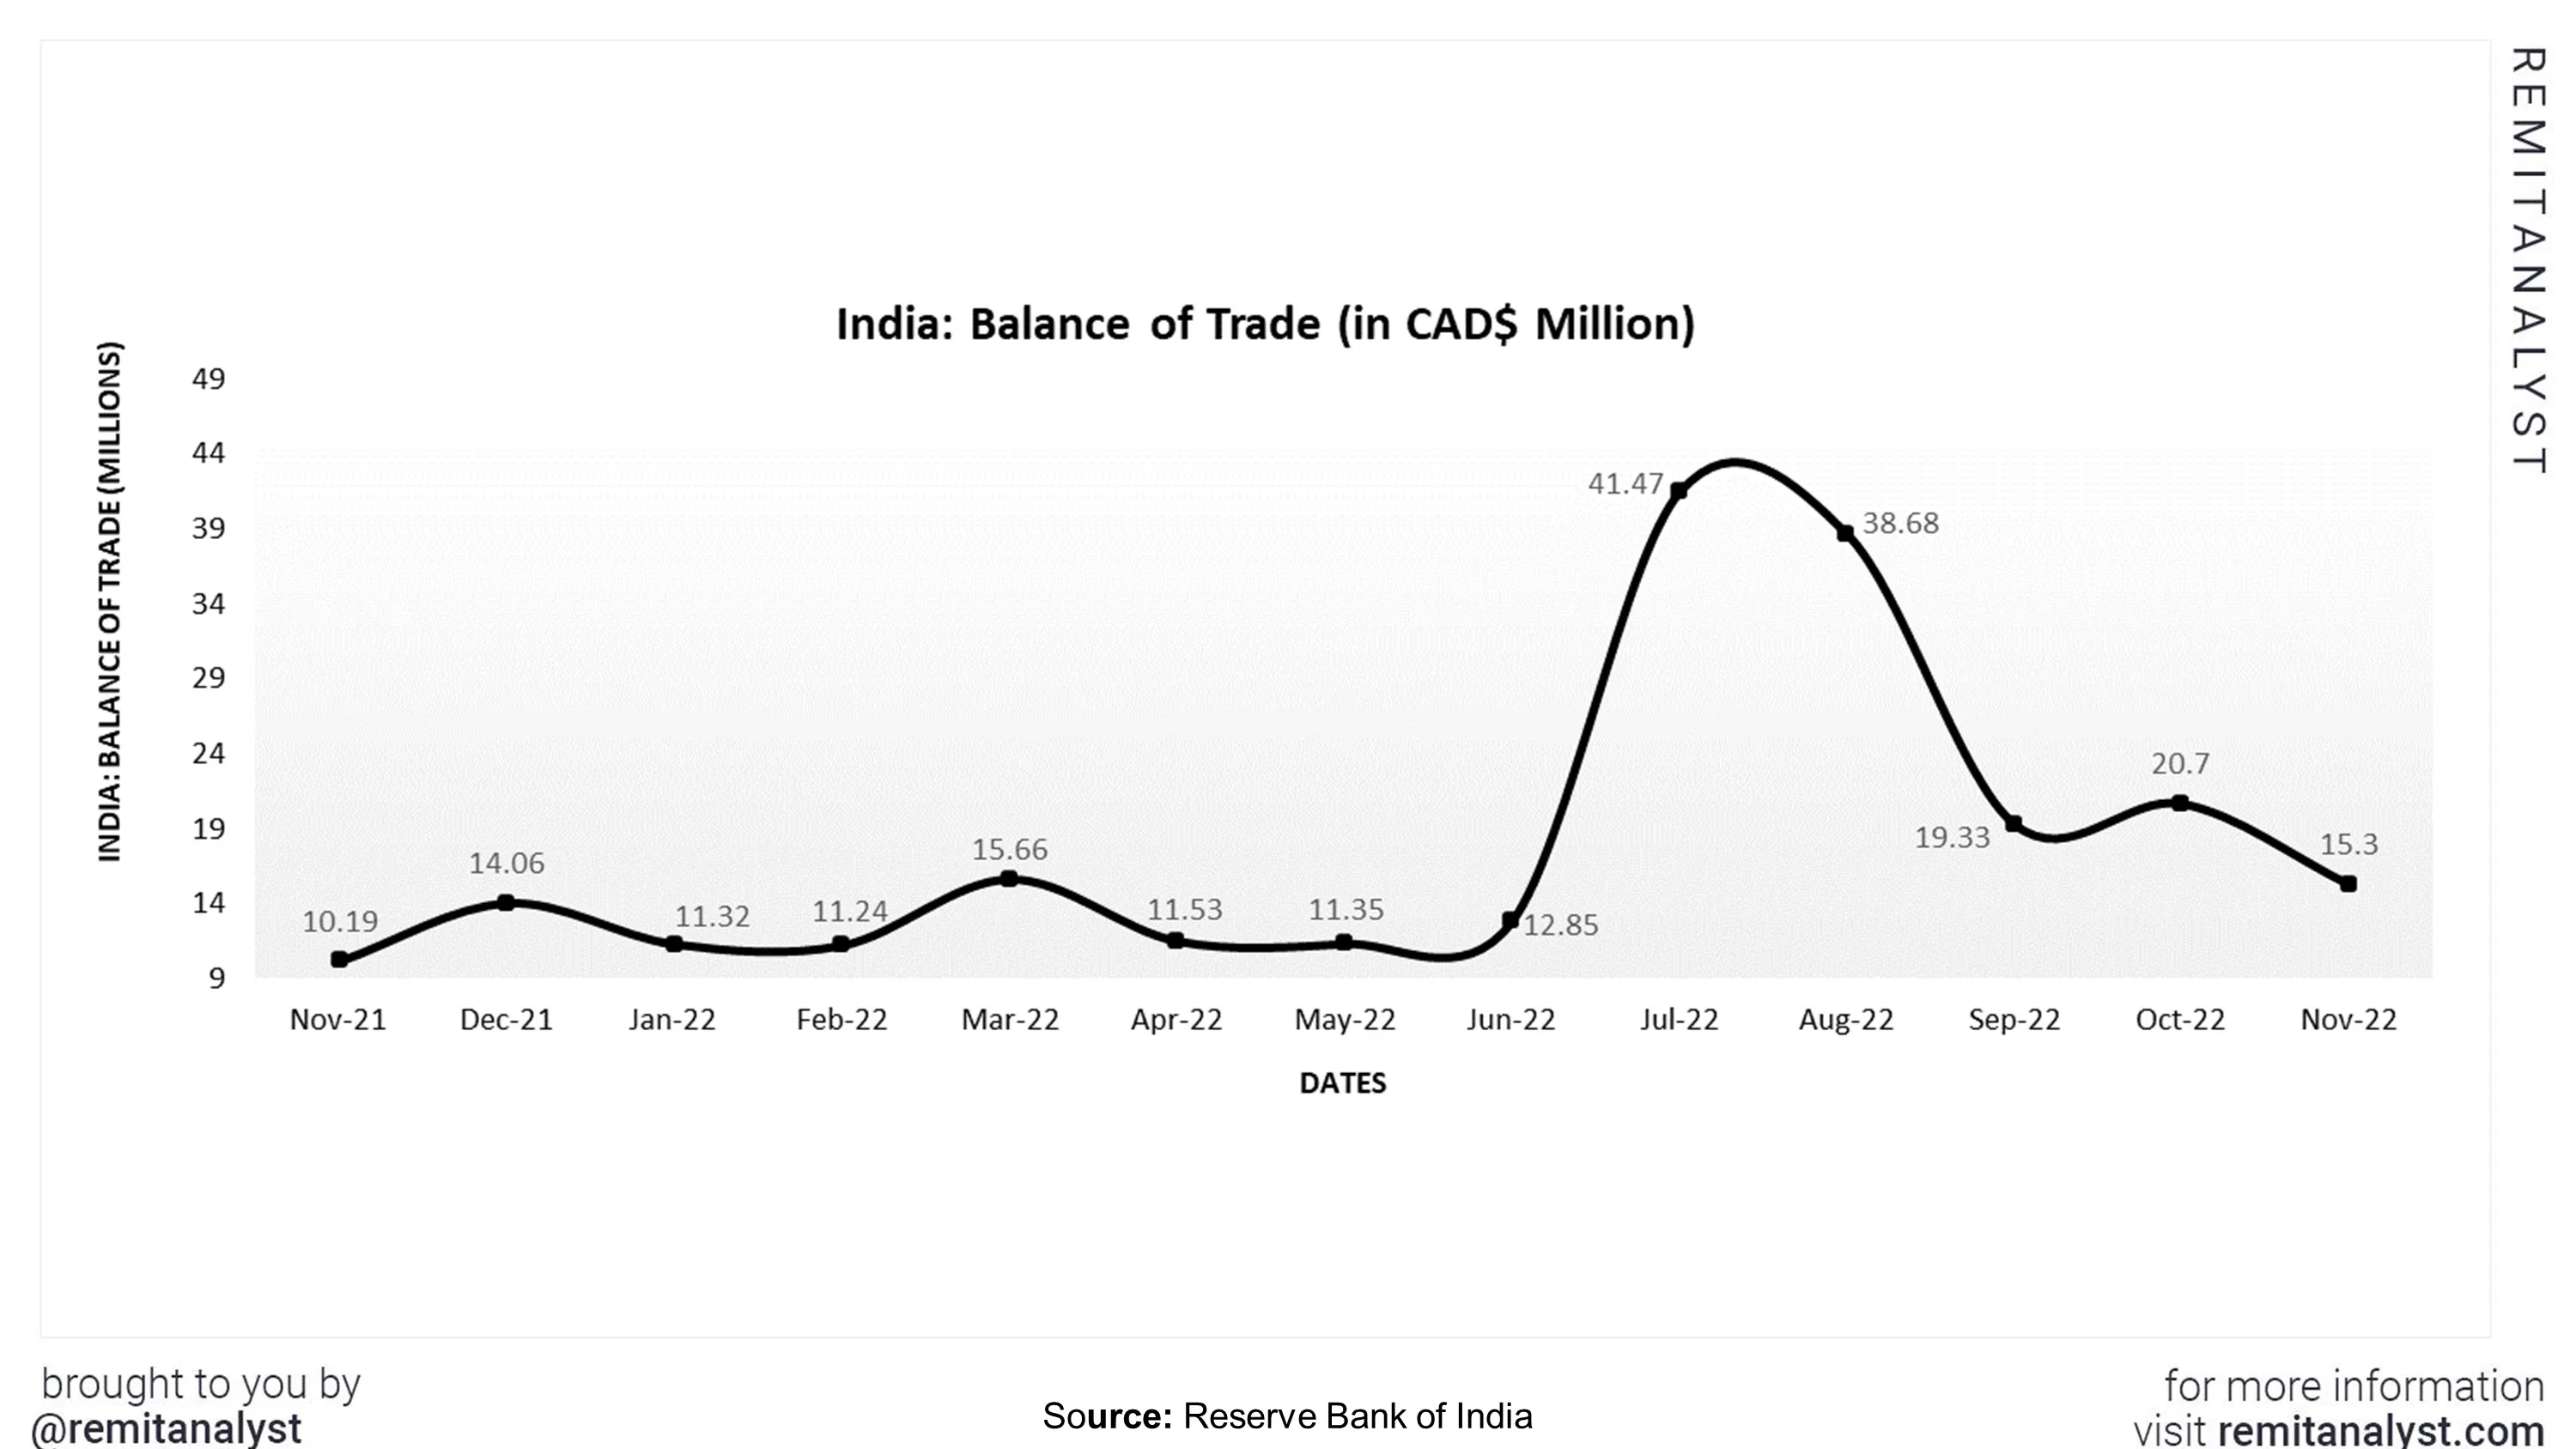 balance-of-trade-india-sep-from-nov-2021-to-nov-2022